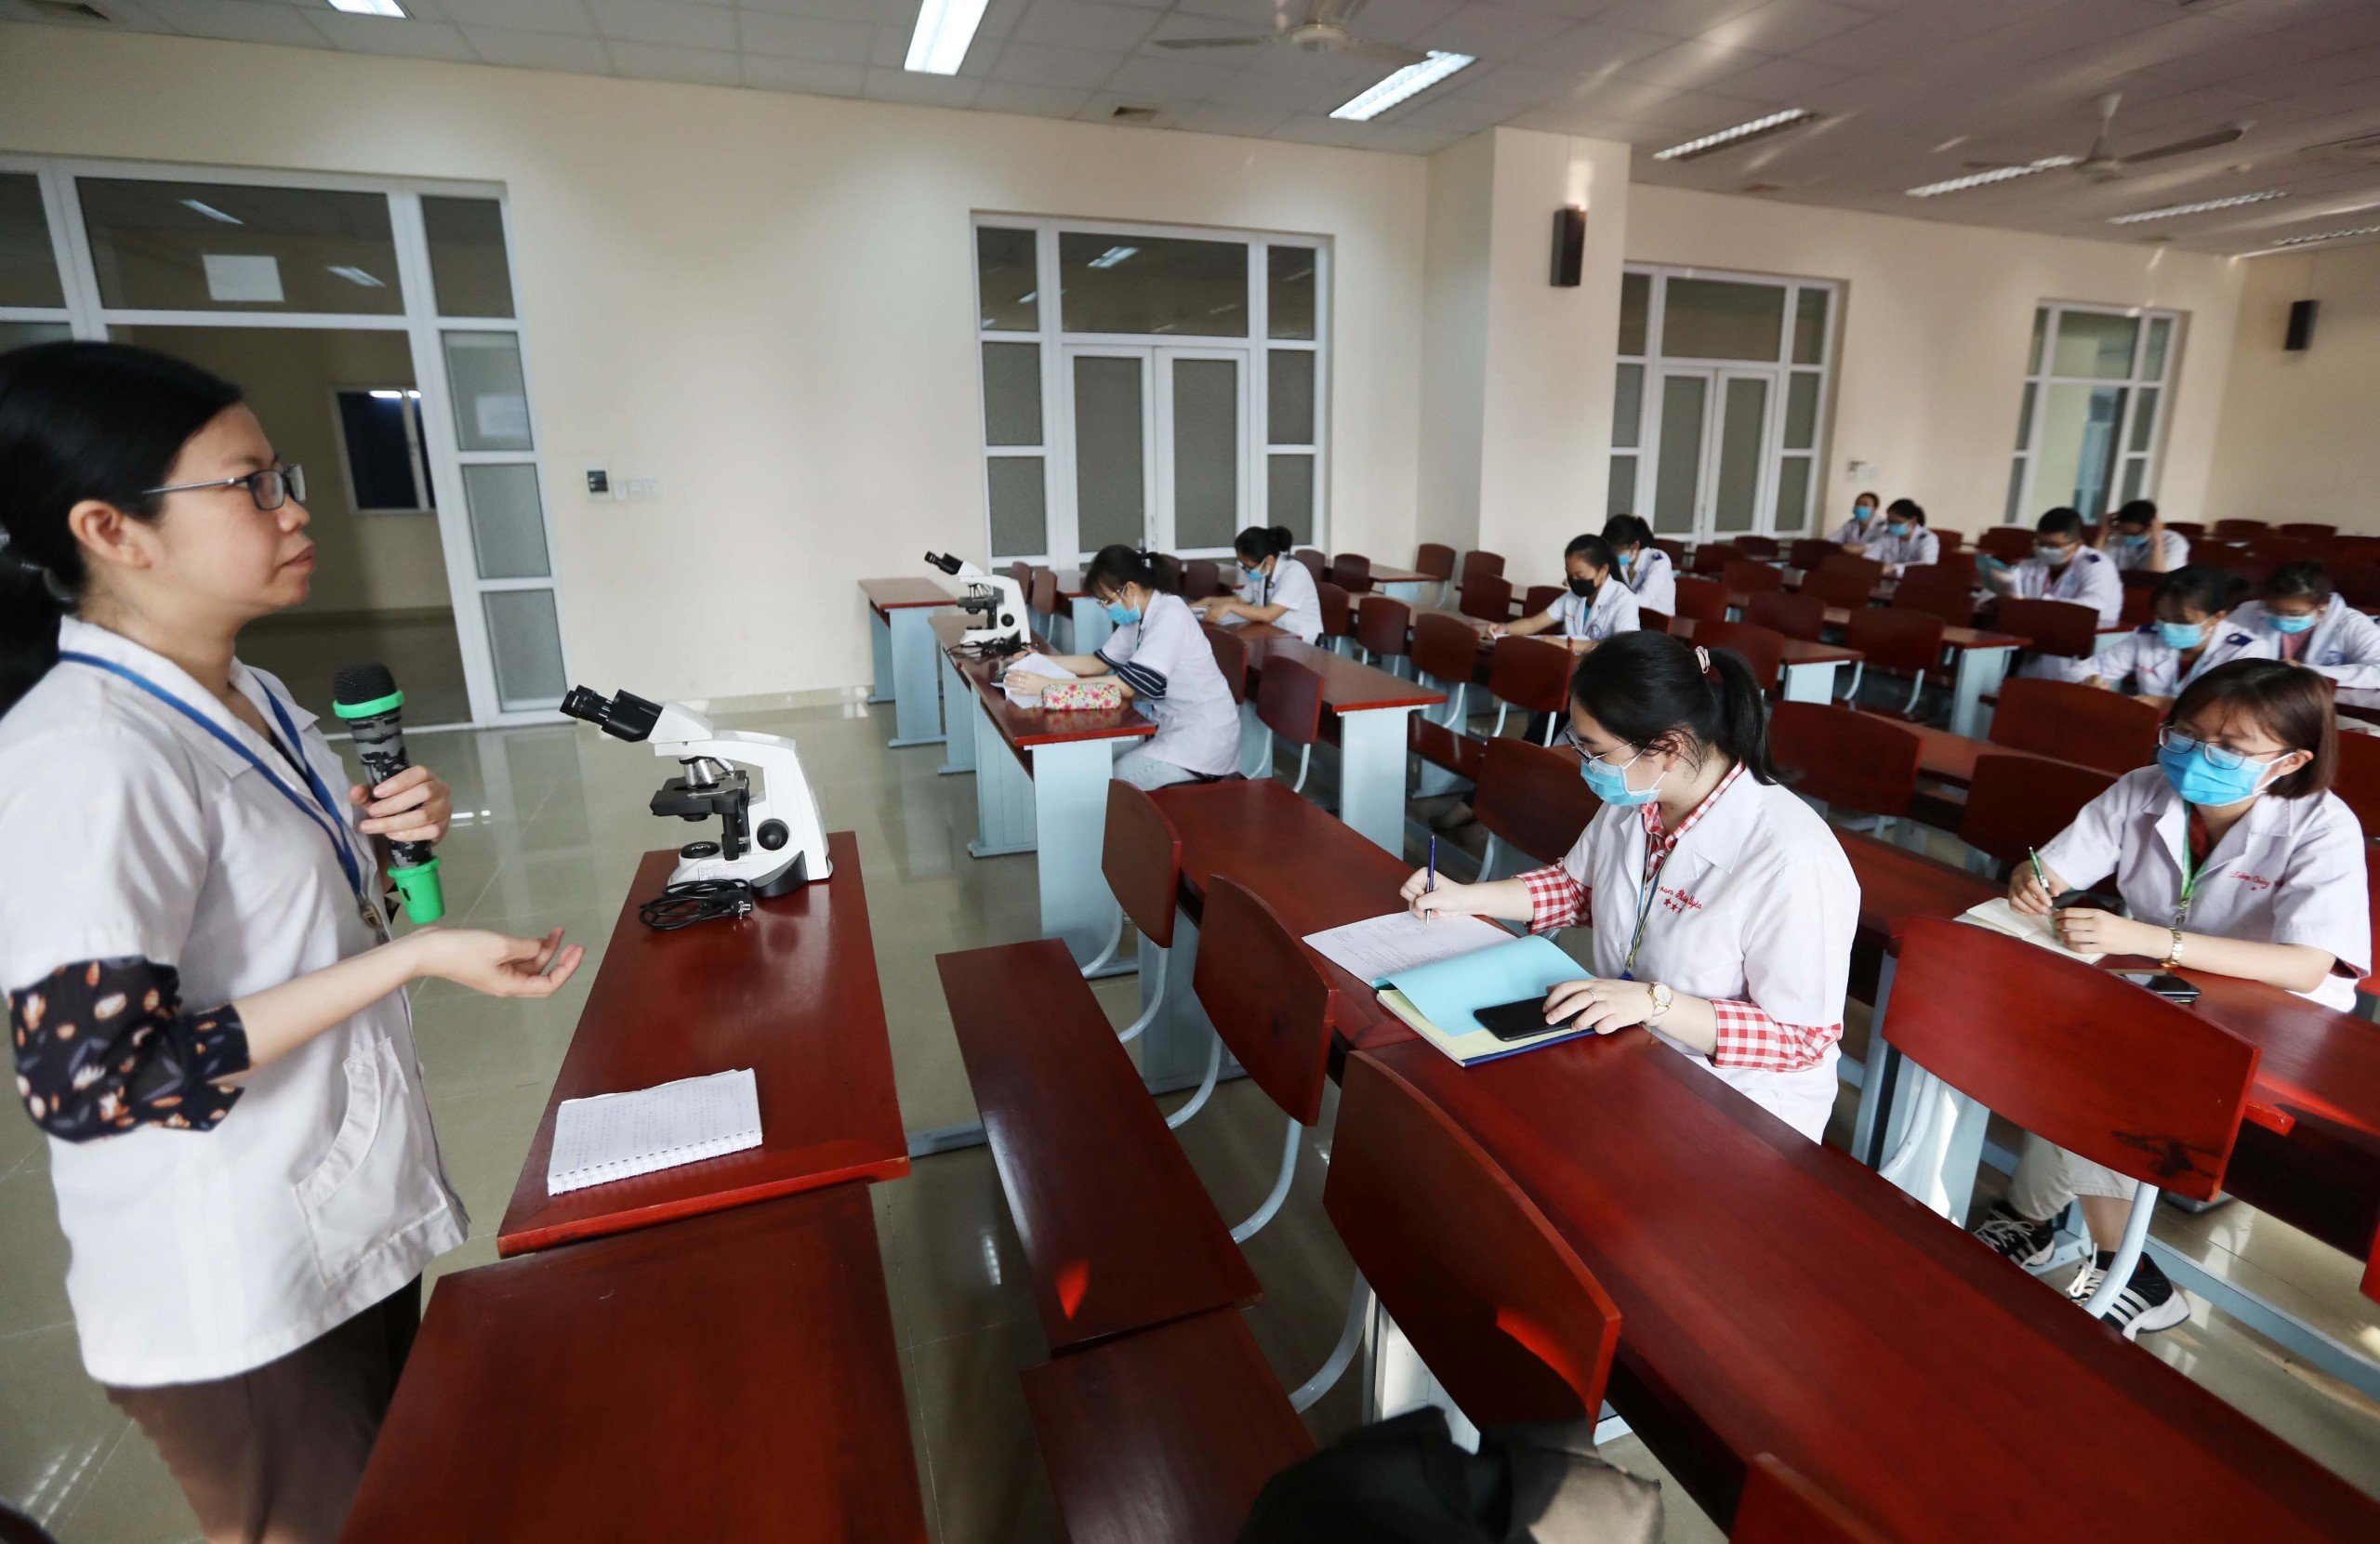 ベトナムの医療訓練学校は、その訓練プログラムが世界中で認定され、認められることを目指しています